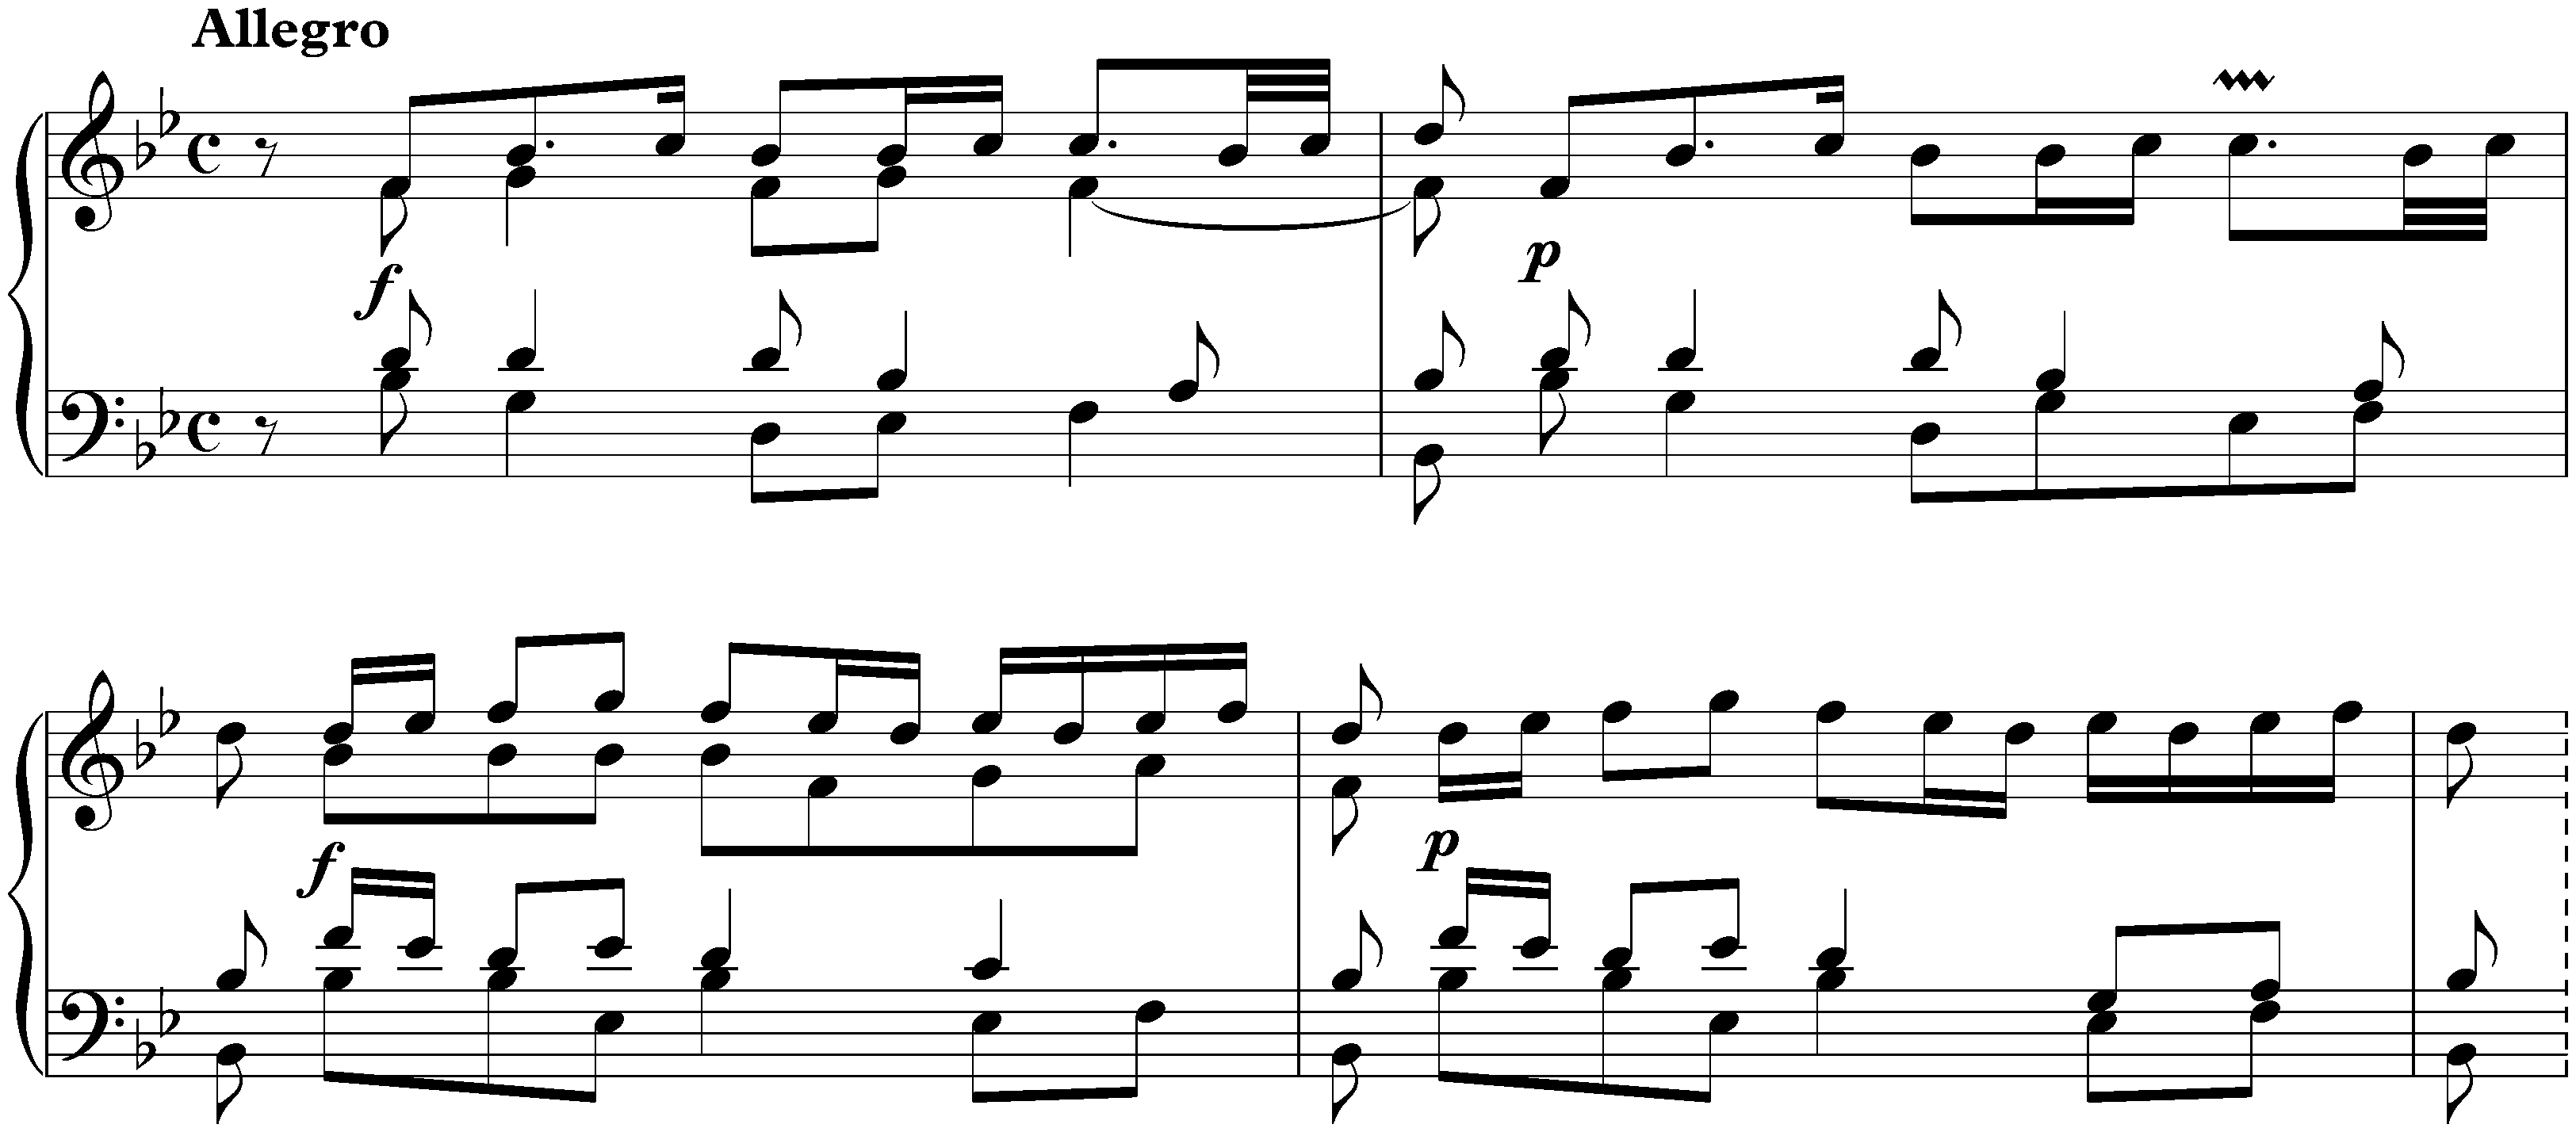 Suite in B-flat major, BWV 821; 5. Echo: Allegro